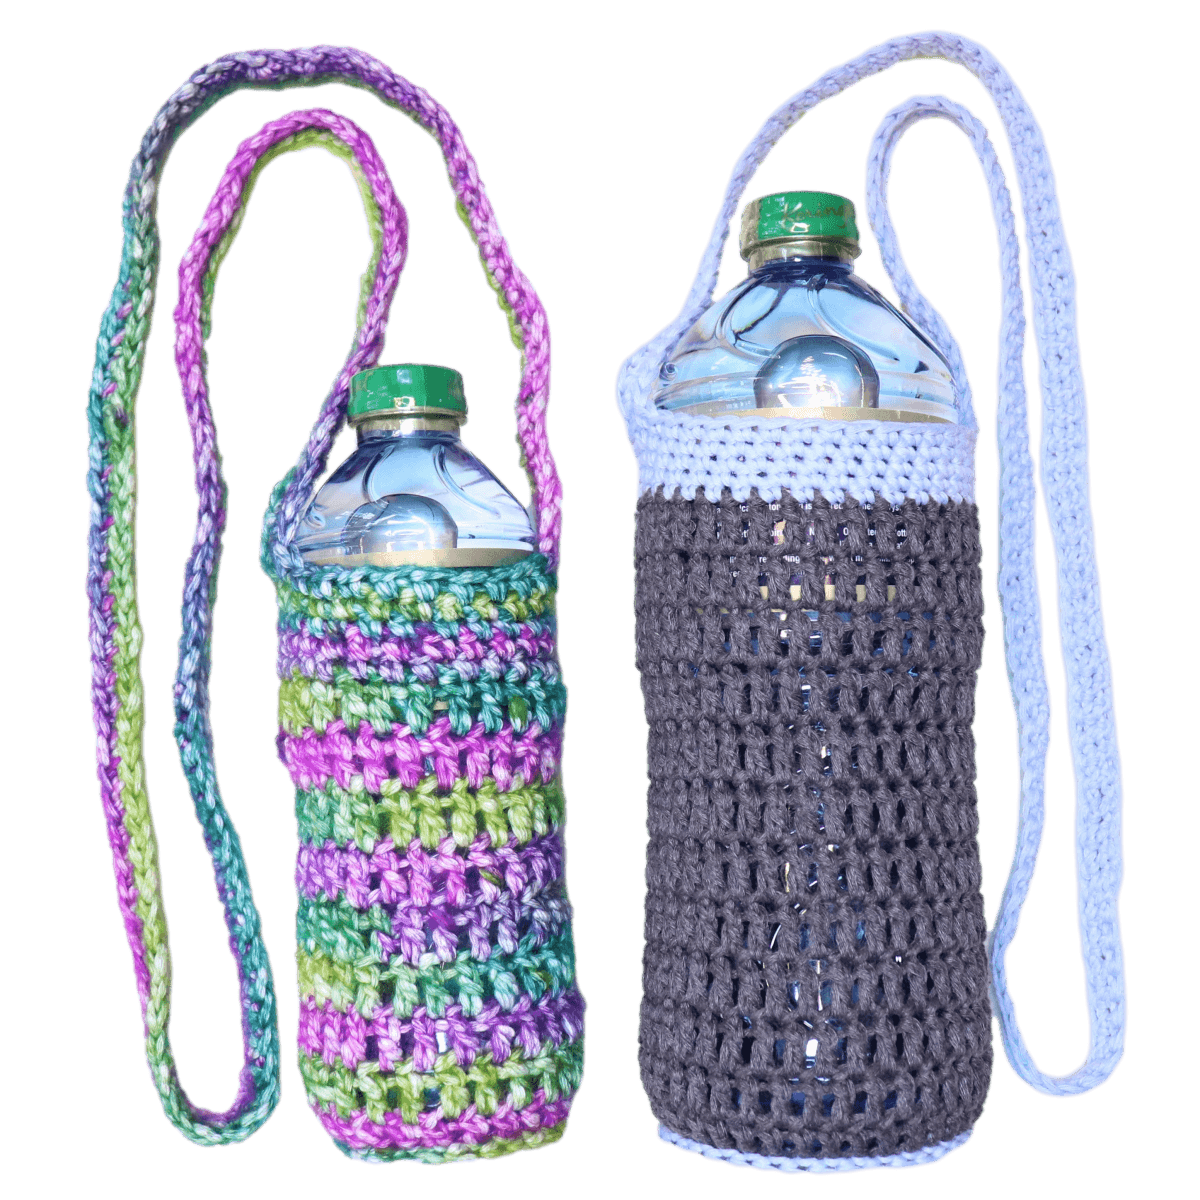 Water bottle holder crochet pattern - The Secret Yarnery